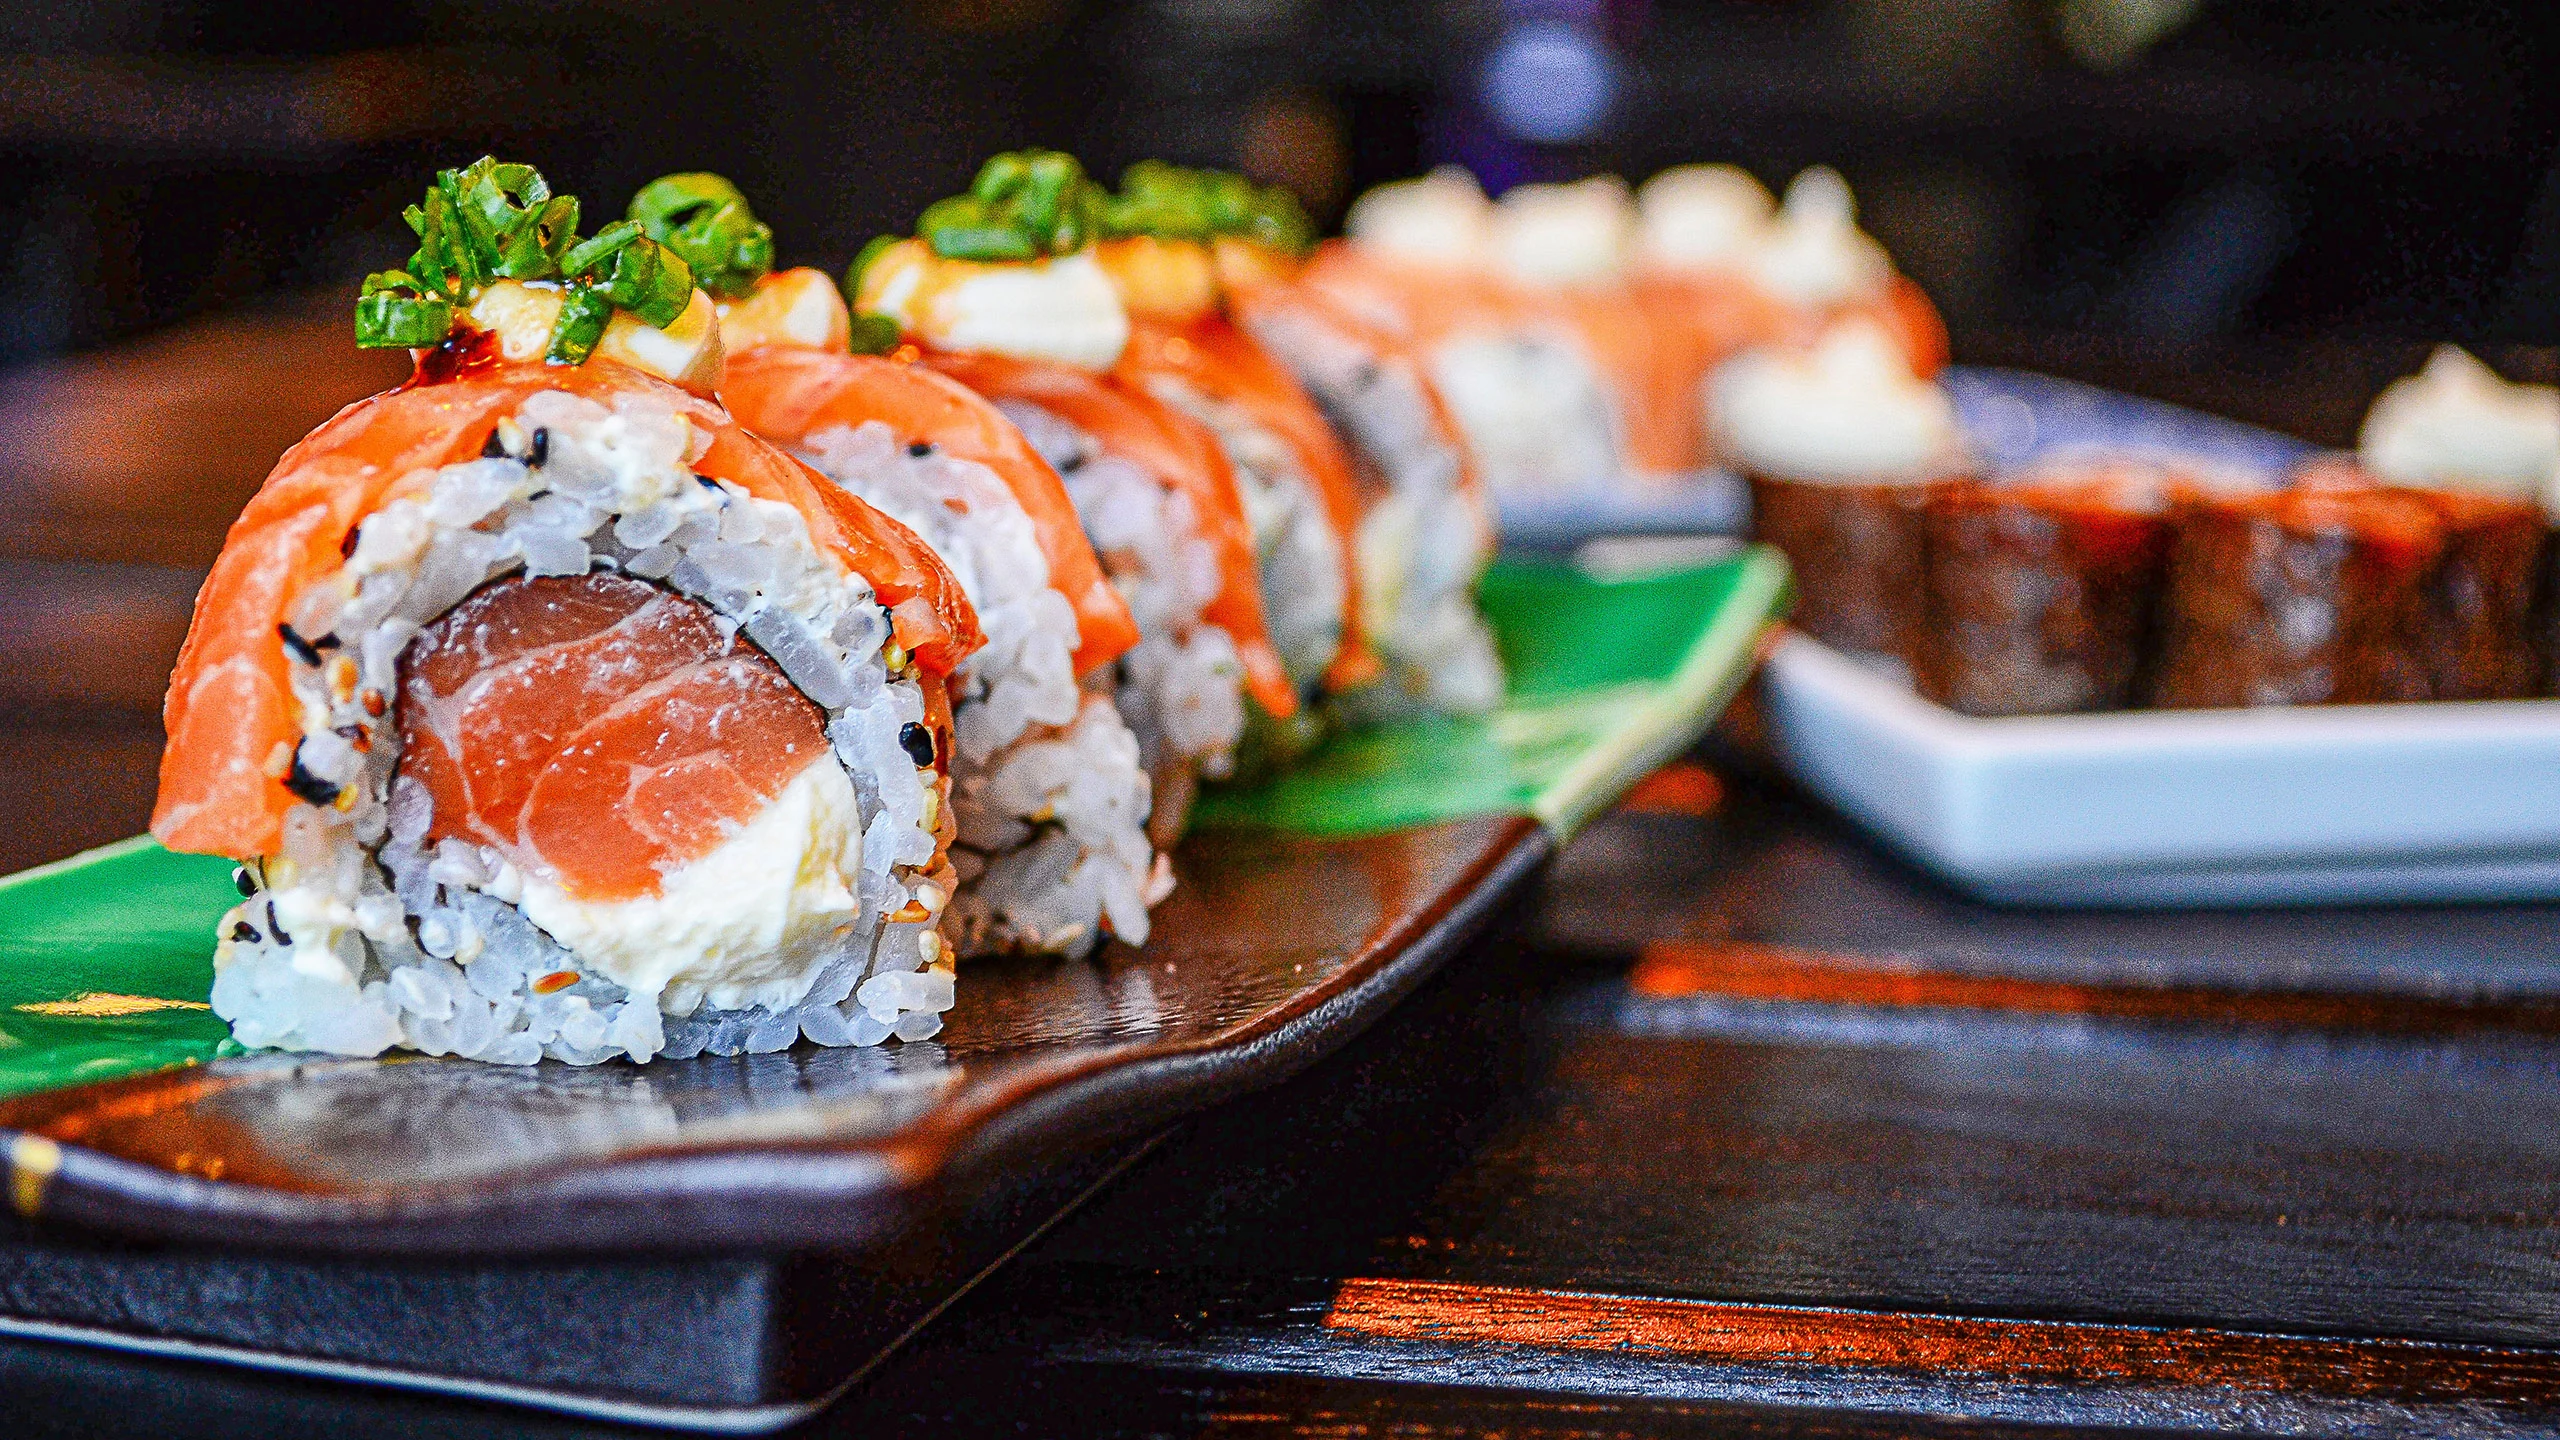 Un chef nos compartió 4 consejos básicos para preparar sushi